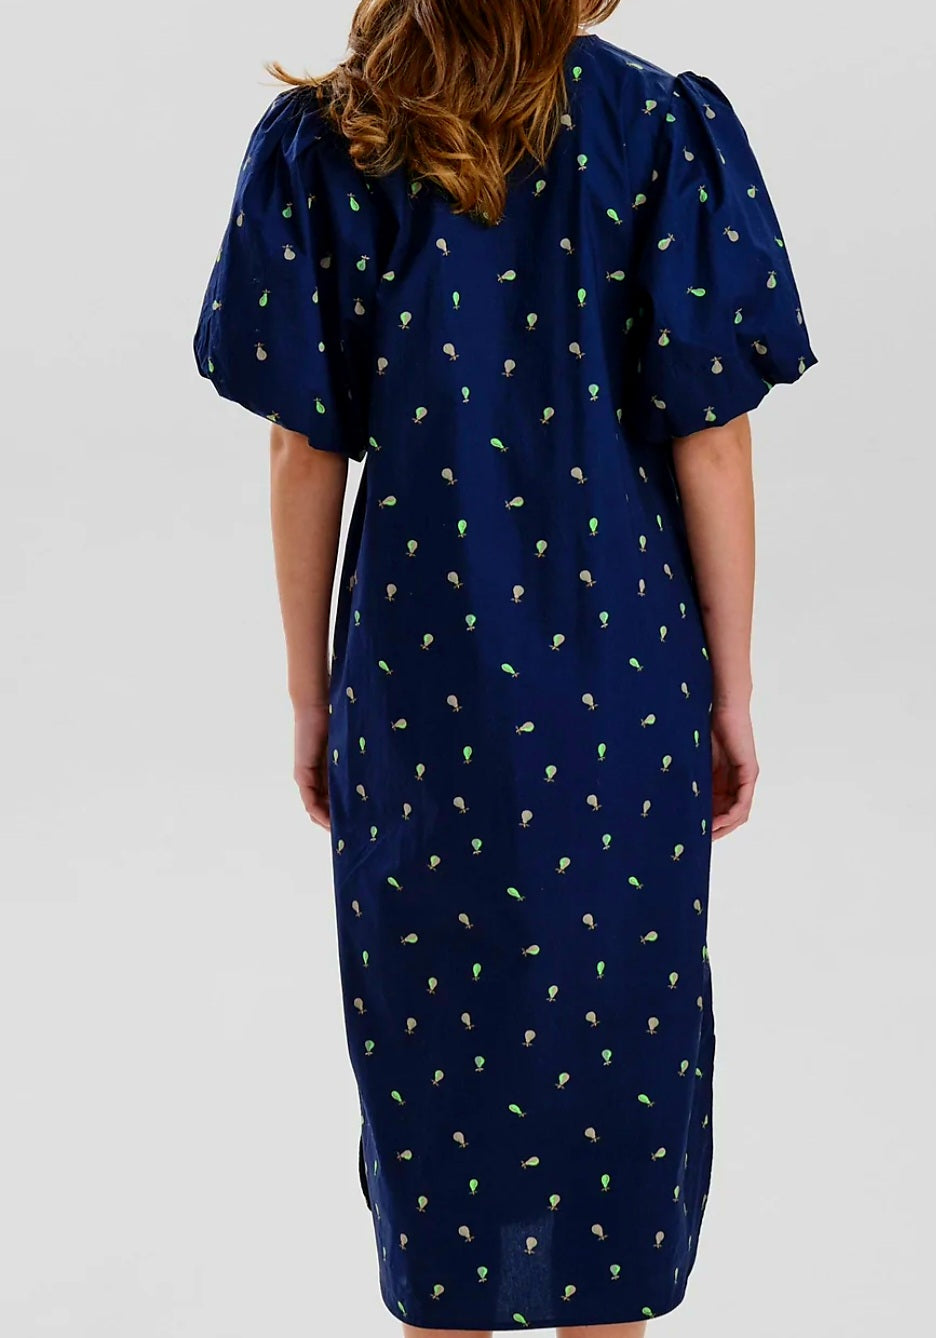 Dunkelblaues Kleid mit Birnenprint von Nümph, erhältlich bei 17 und wir.